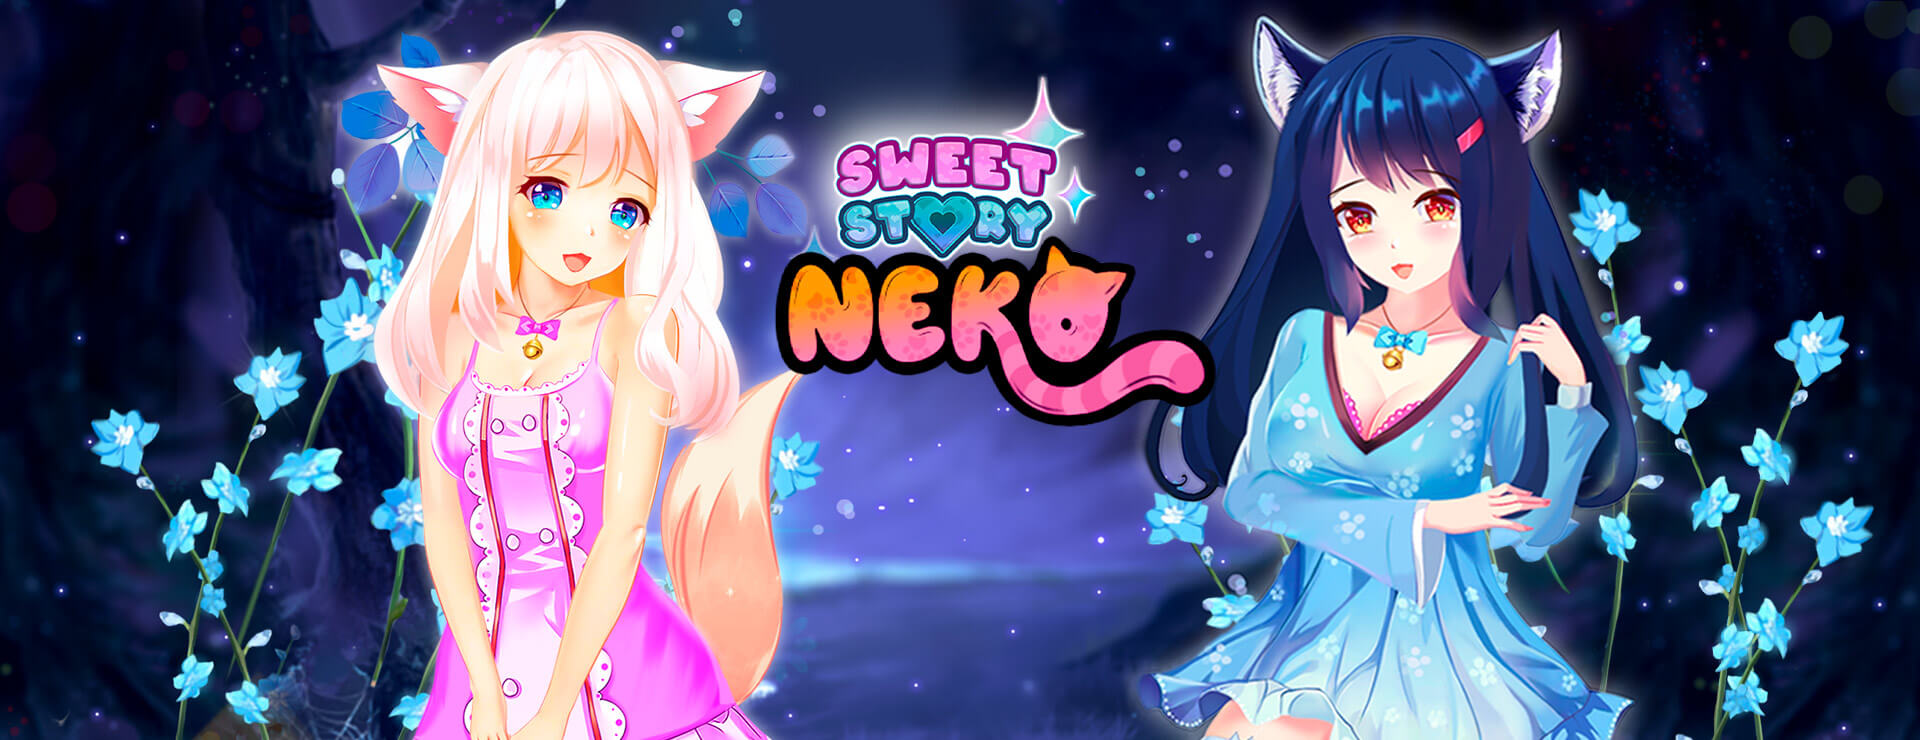 Sweet Story Neko - カジュアル ゲーム